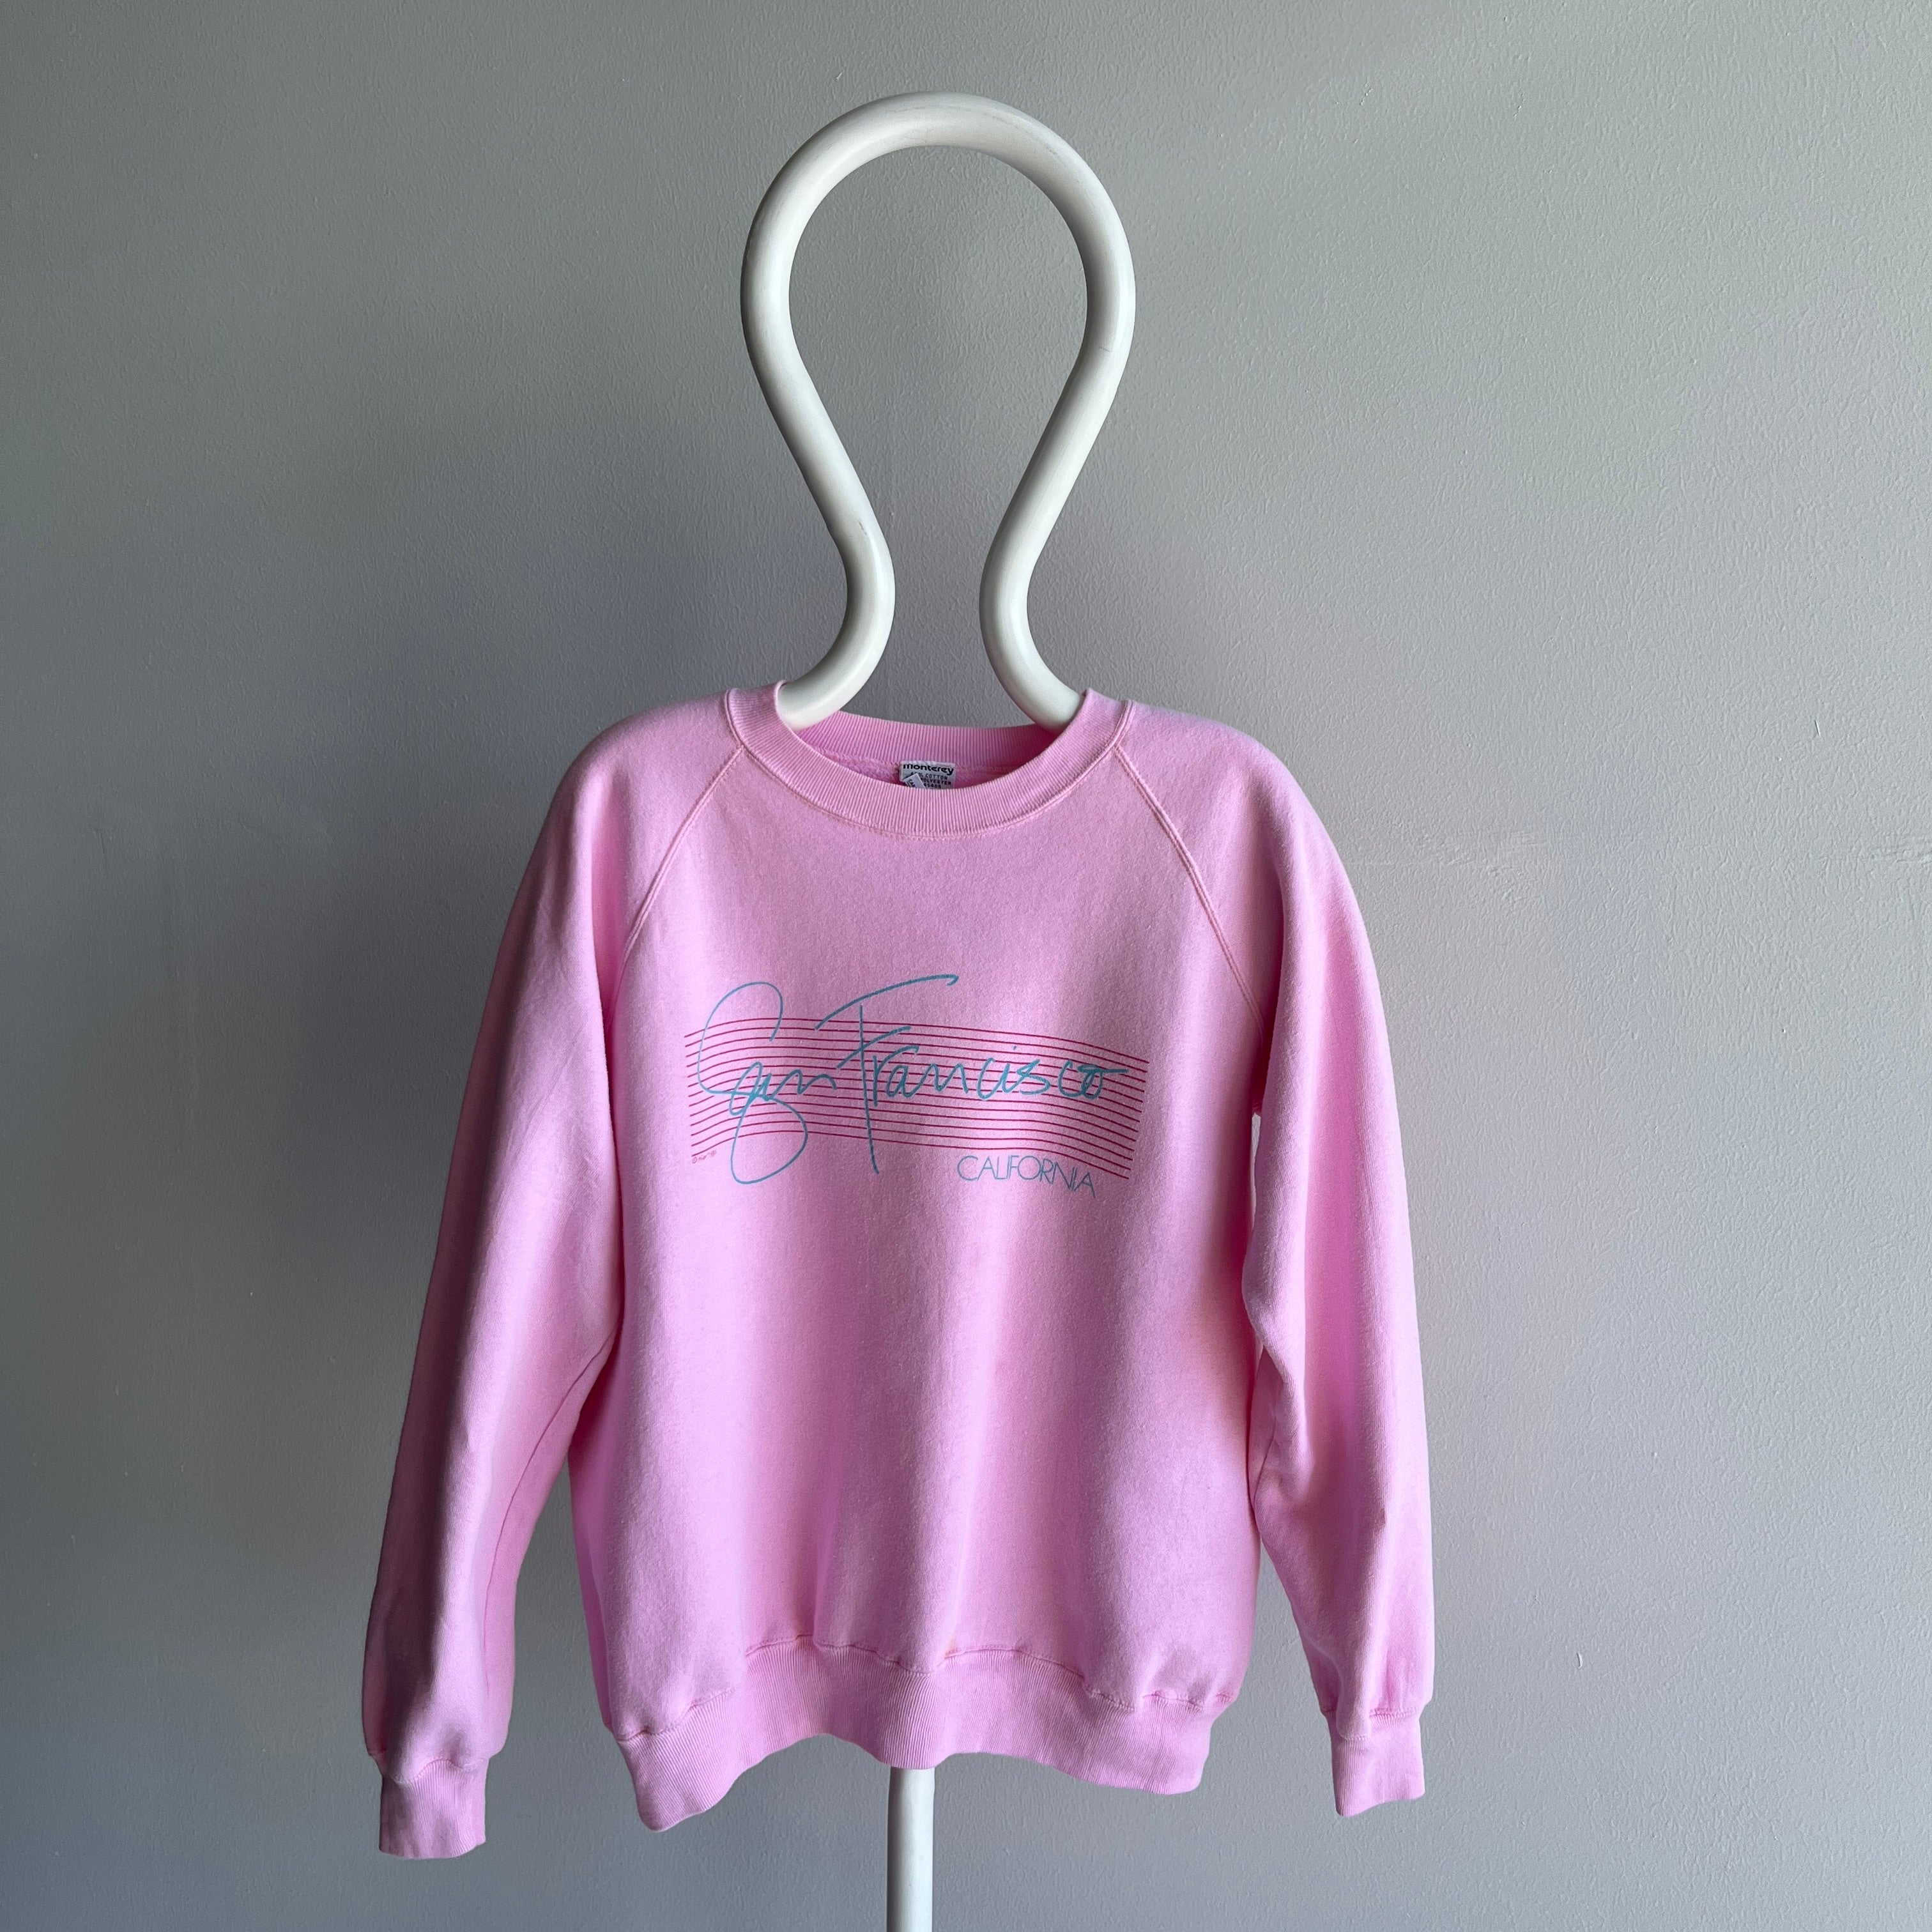 1985 San Francisco Sweatshirt